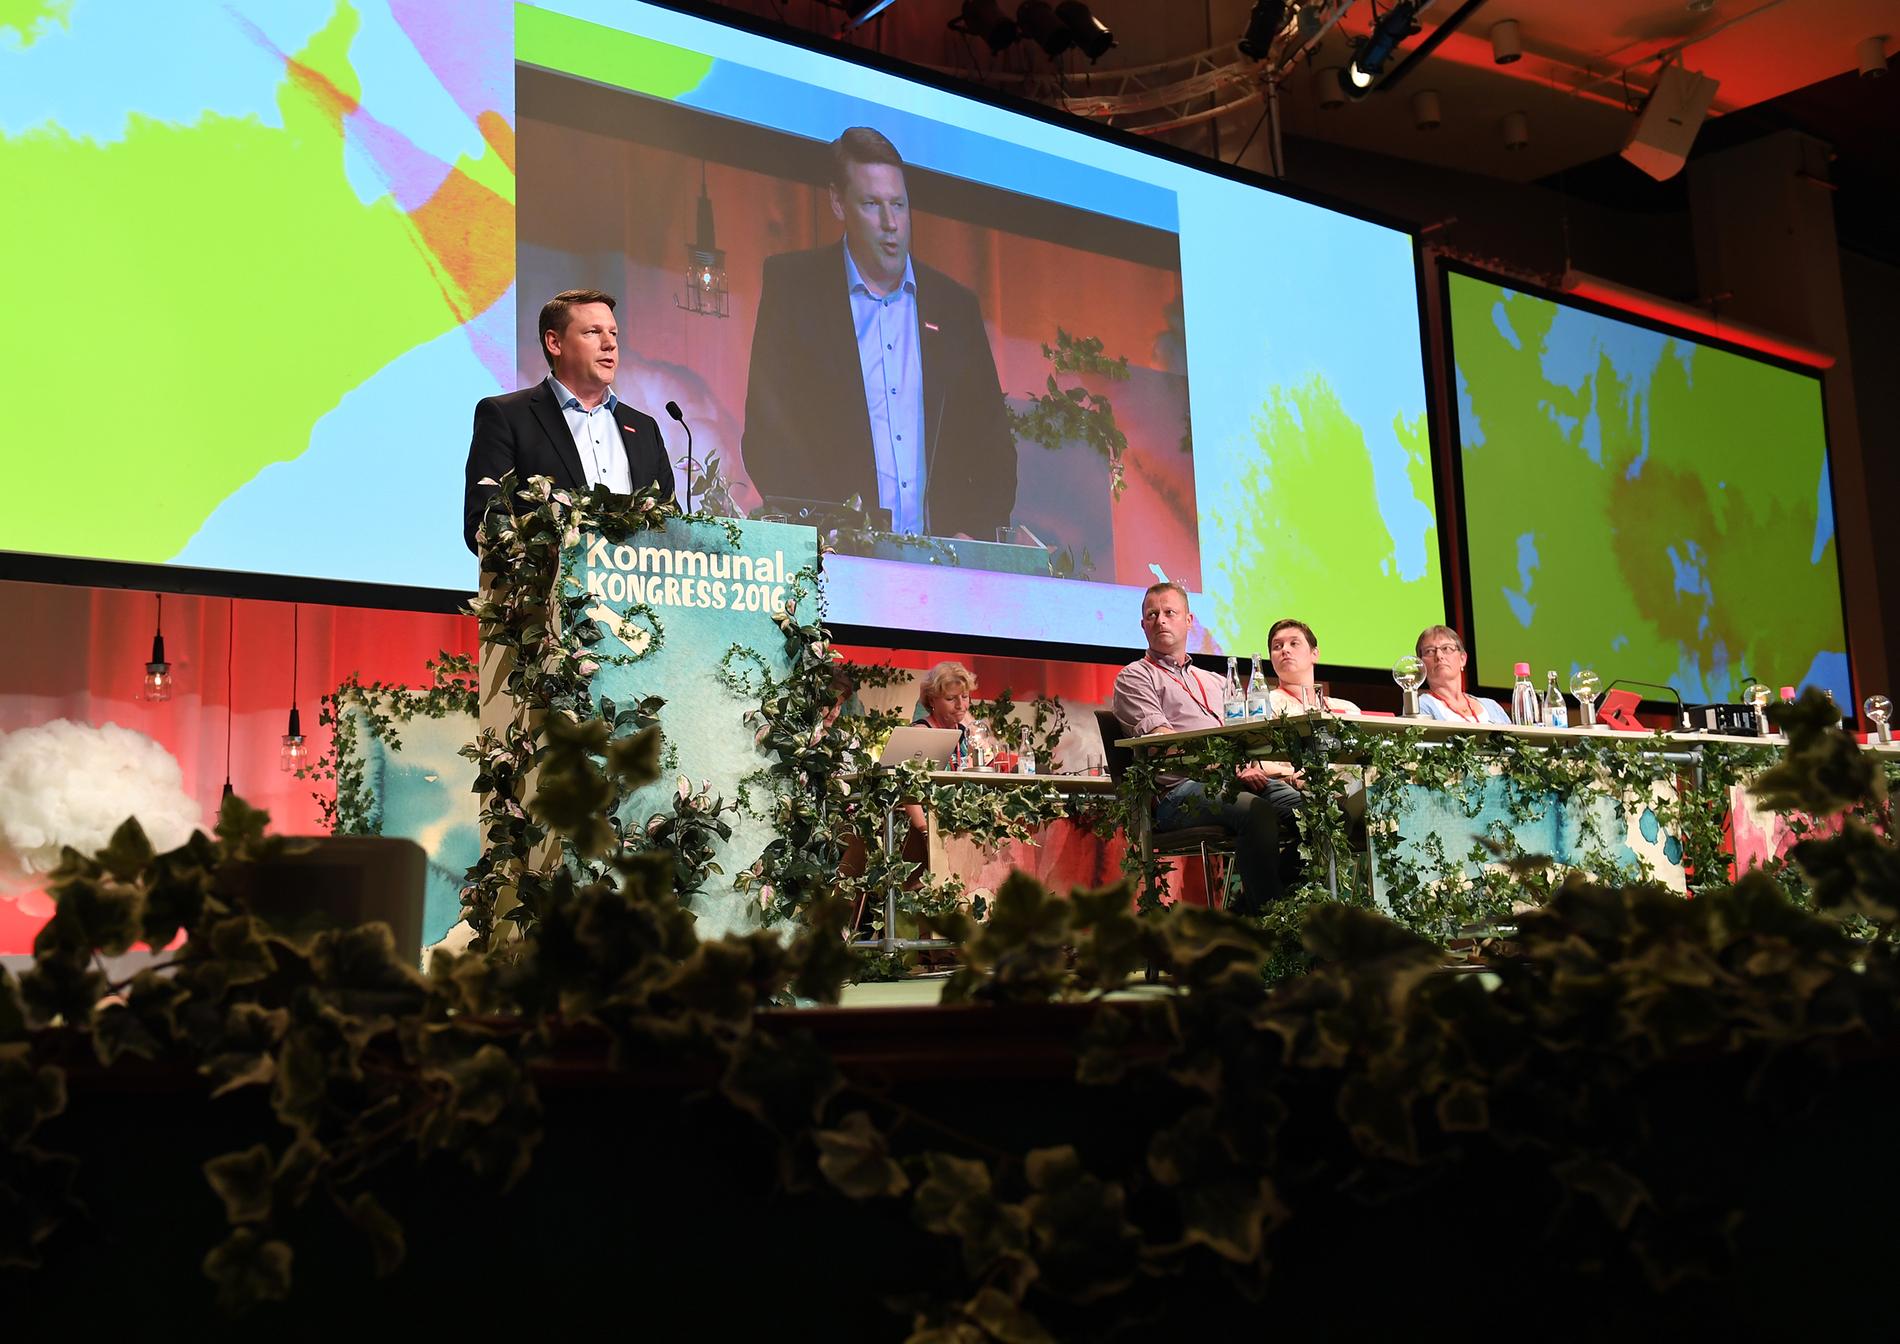 Förbundsordförande Tobias Baudin talar under fackförbundet Kommunals kongress i Folkets hus i Stockholm på fredagen.